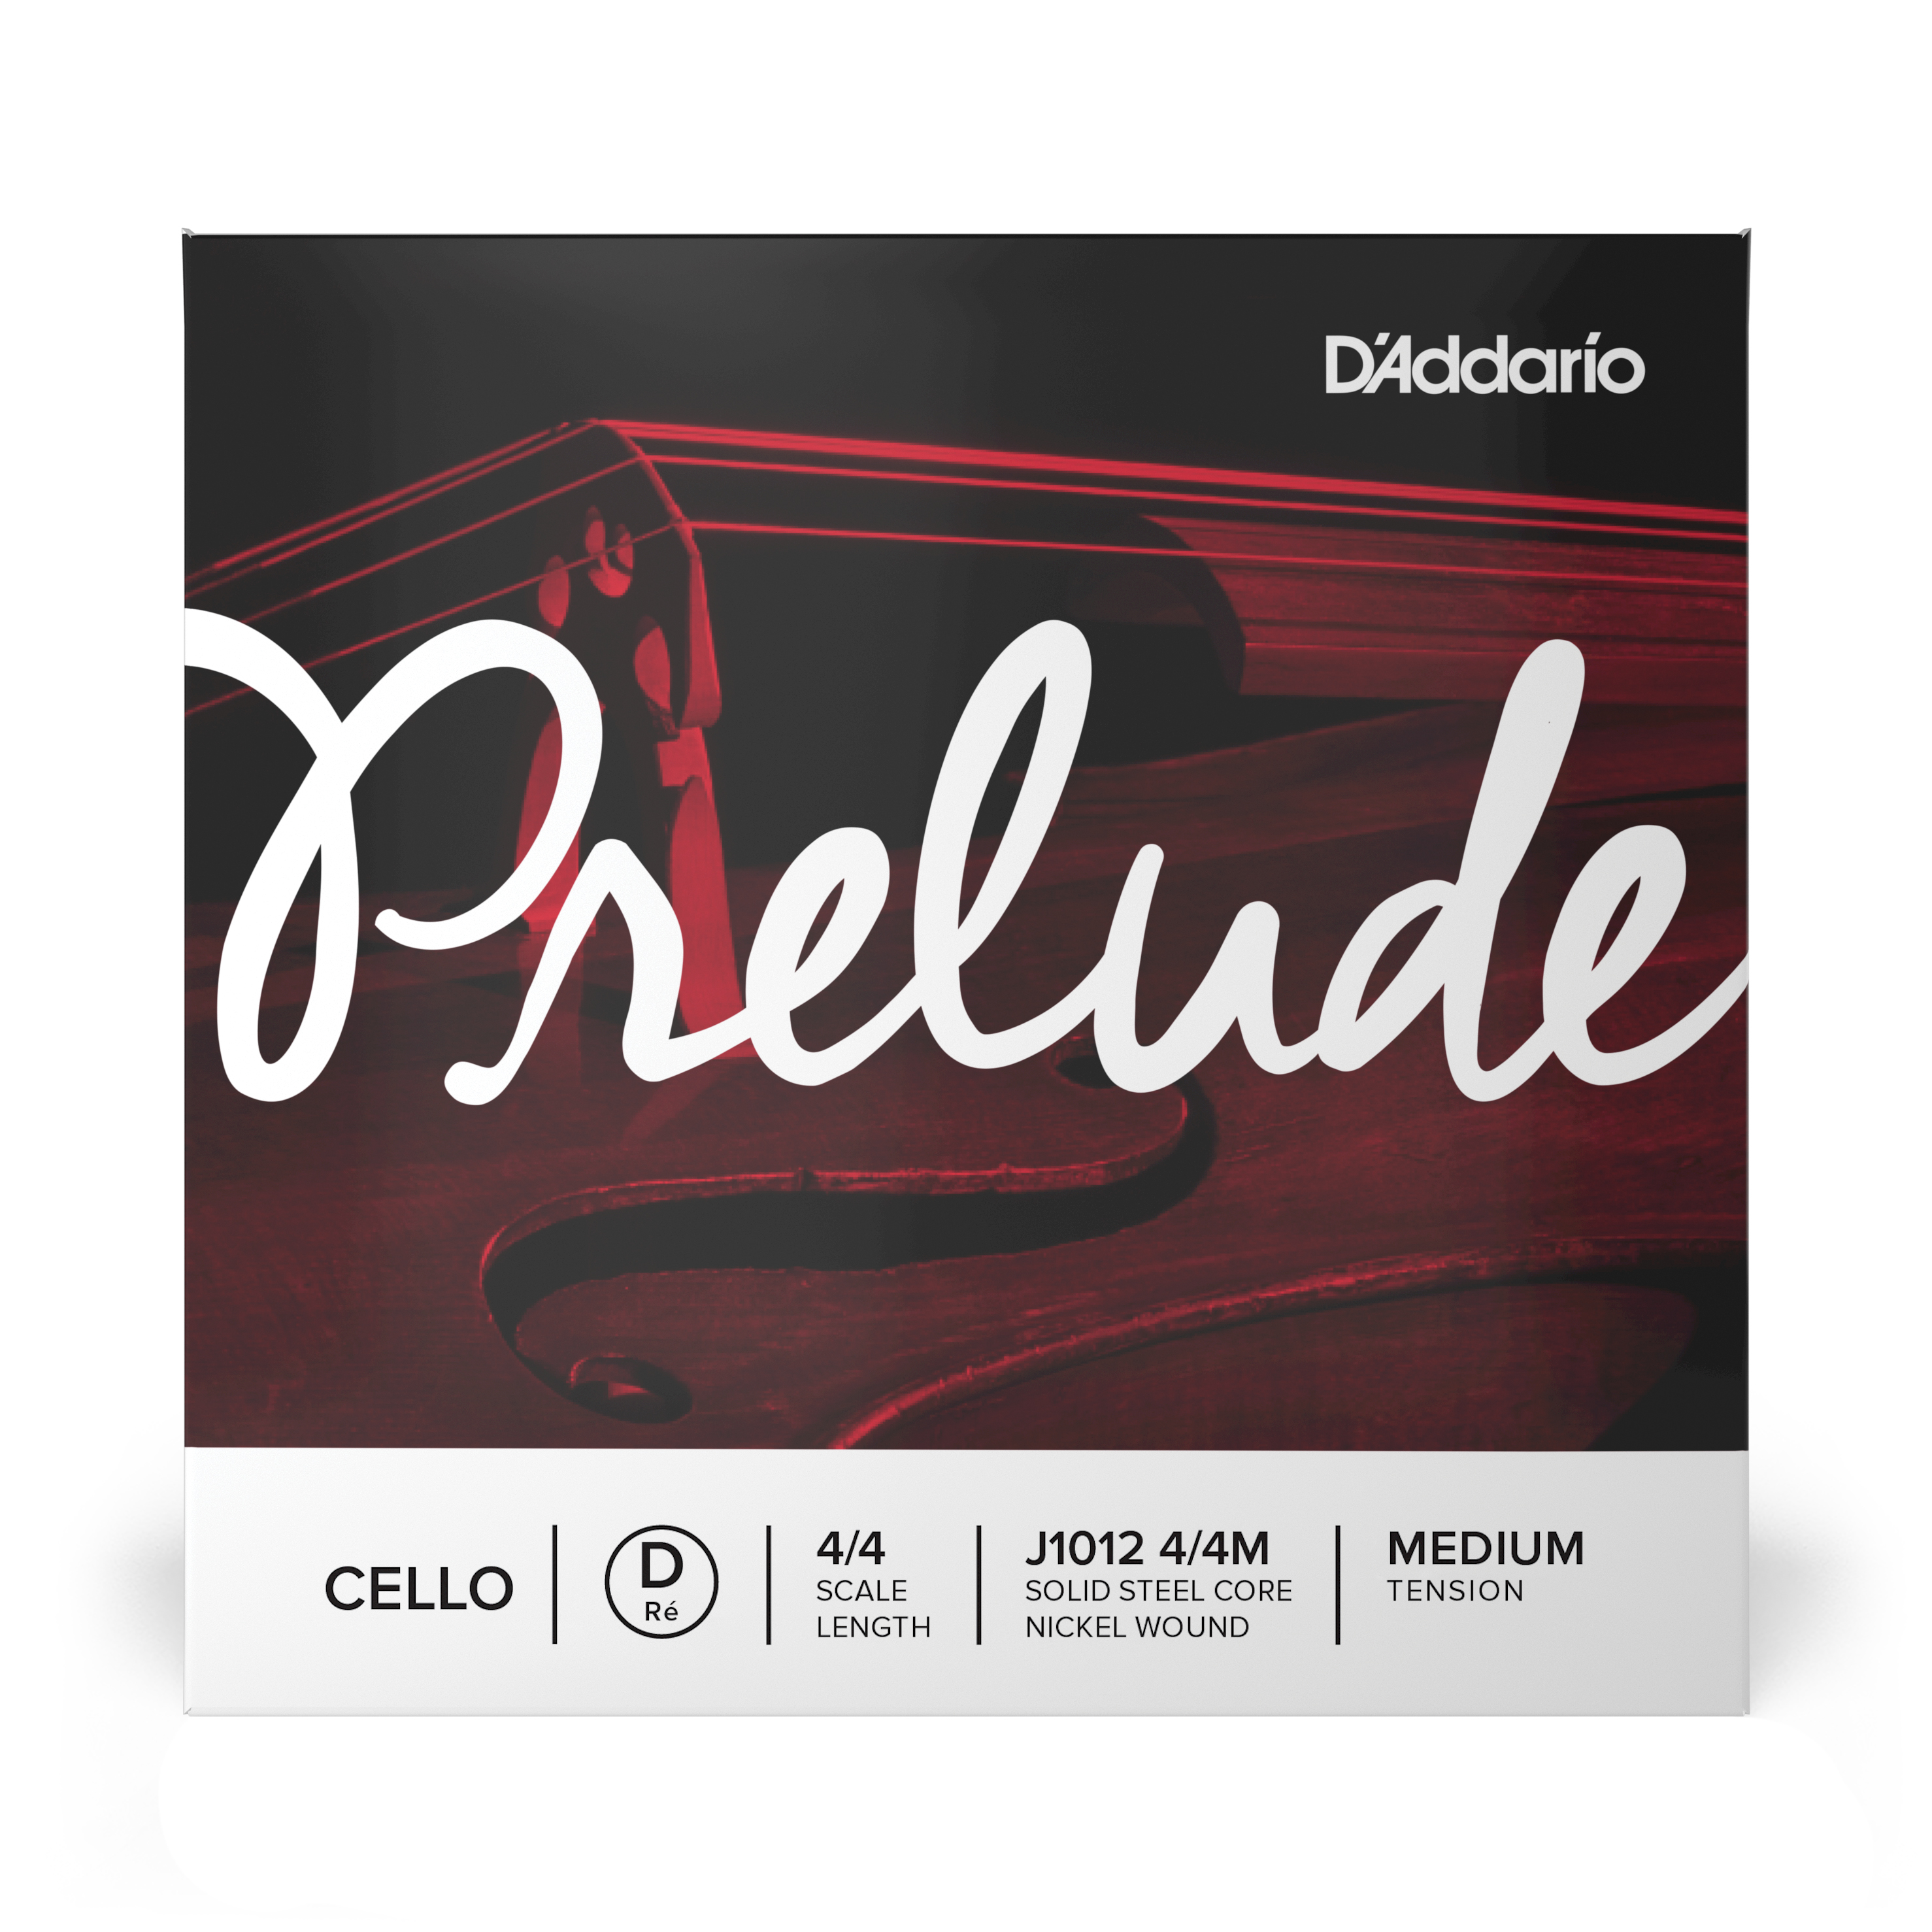 Daddario orchestral it J1012 4/4m corda singola re d'addario prelude per violoncello, scala 4/4, tensione media